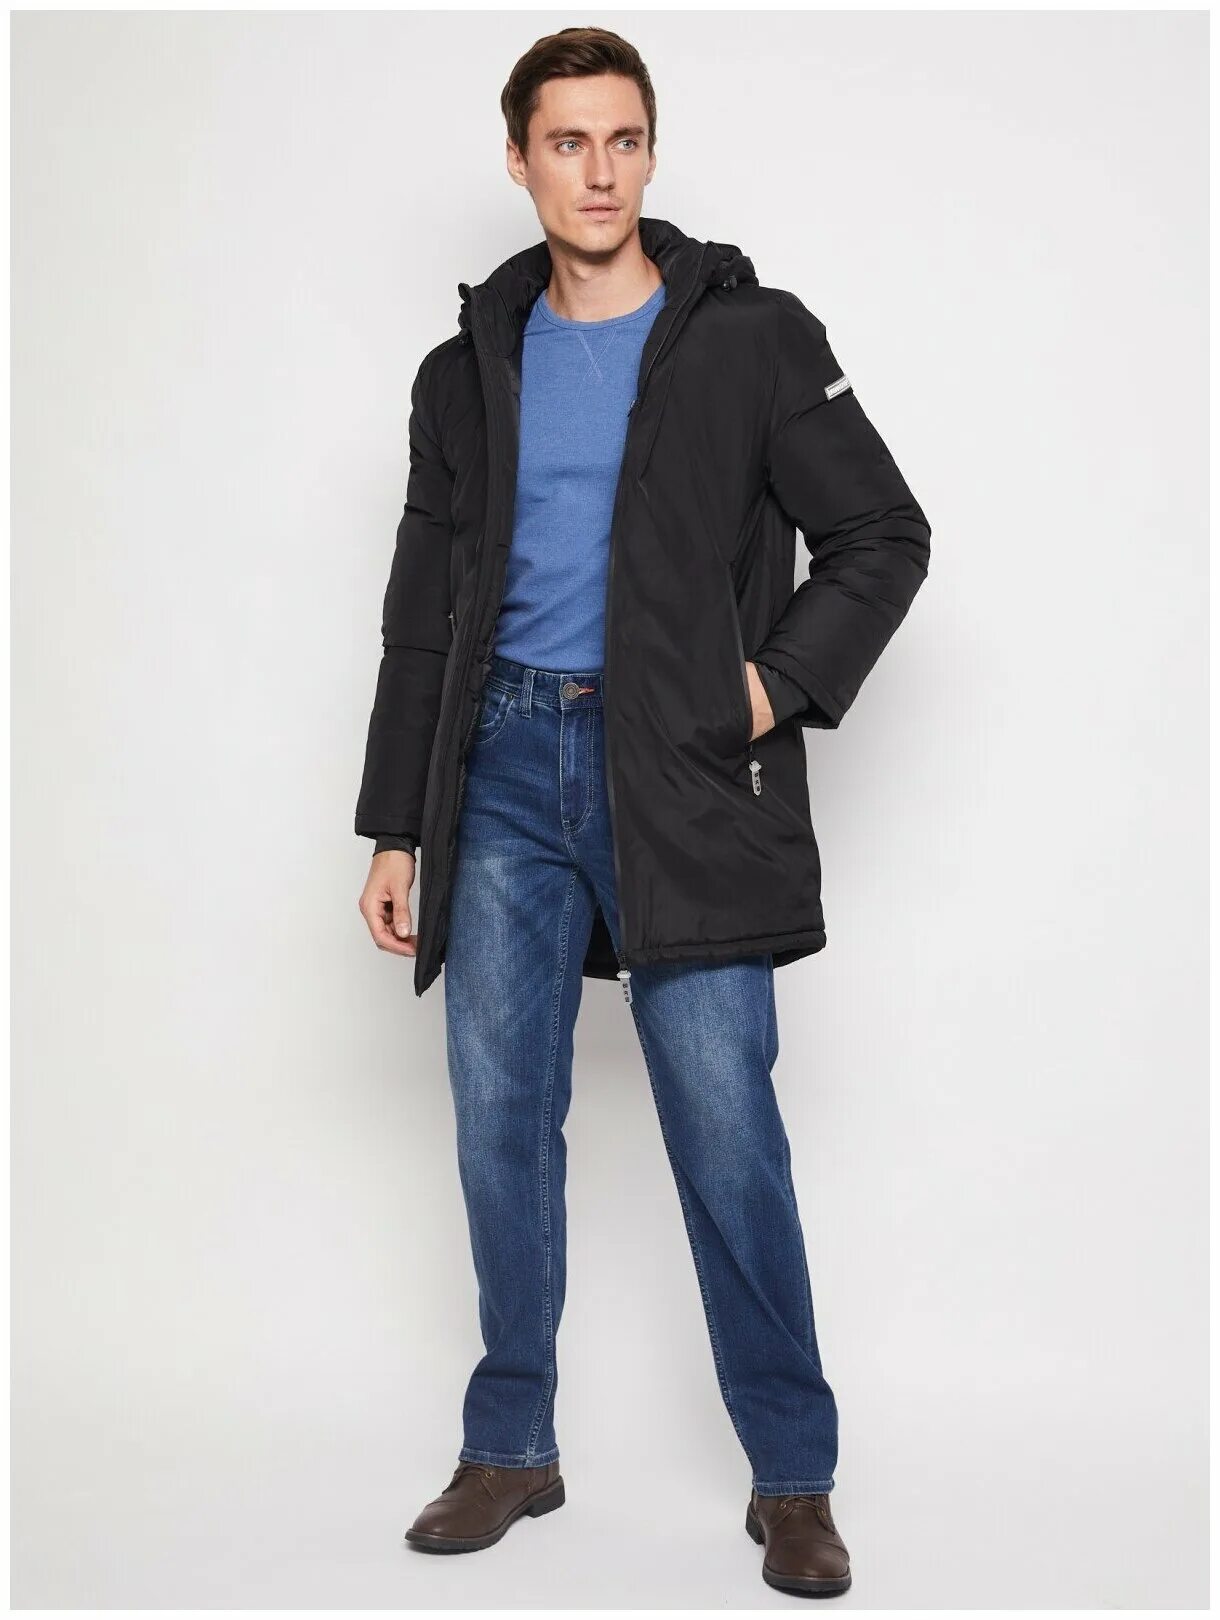 Зола мужской магазин. Куртка Zolla мужская. Zolla куртка мужская новая коллекция. Куртка зола мужская. Zolla куртка мужская зимняя.